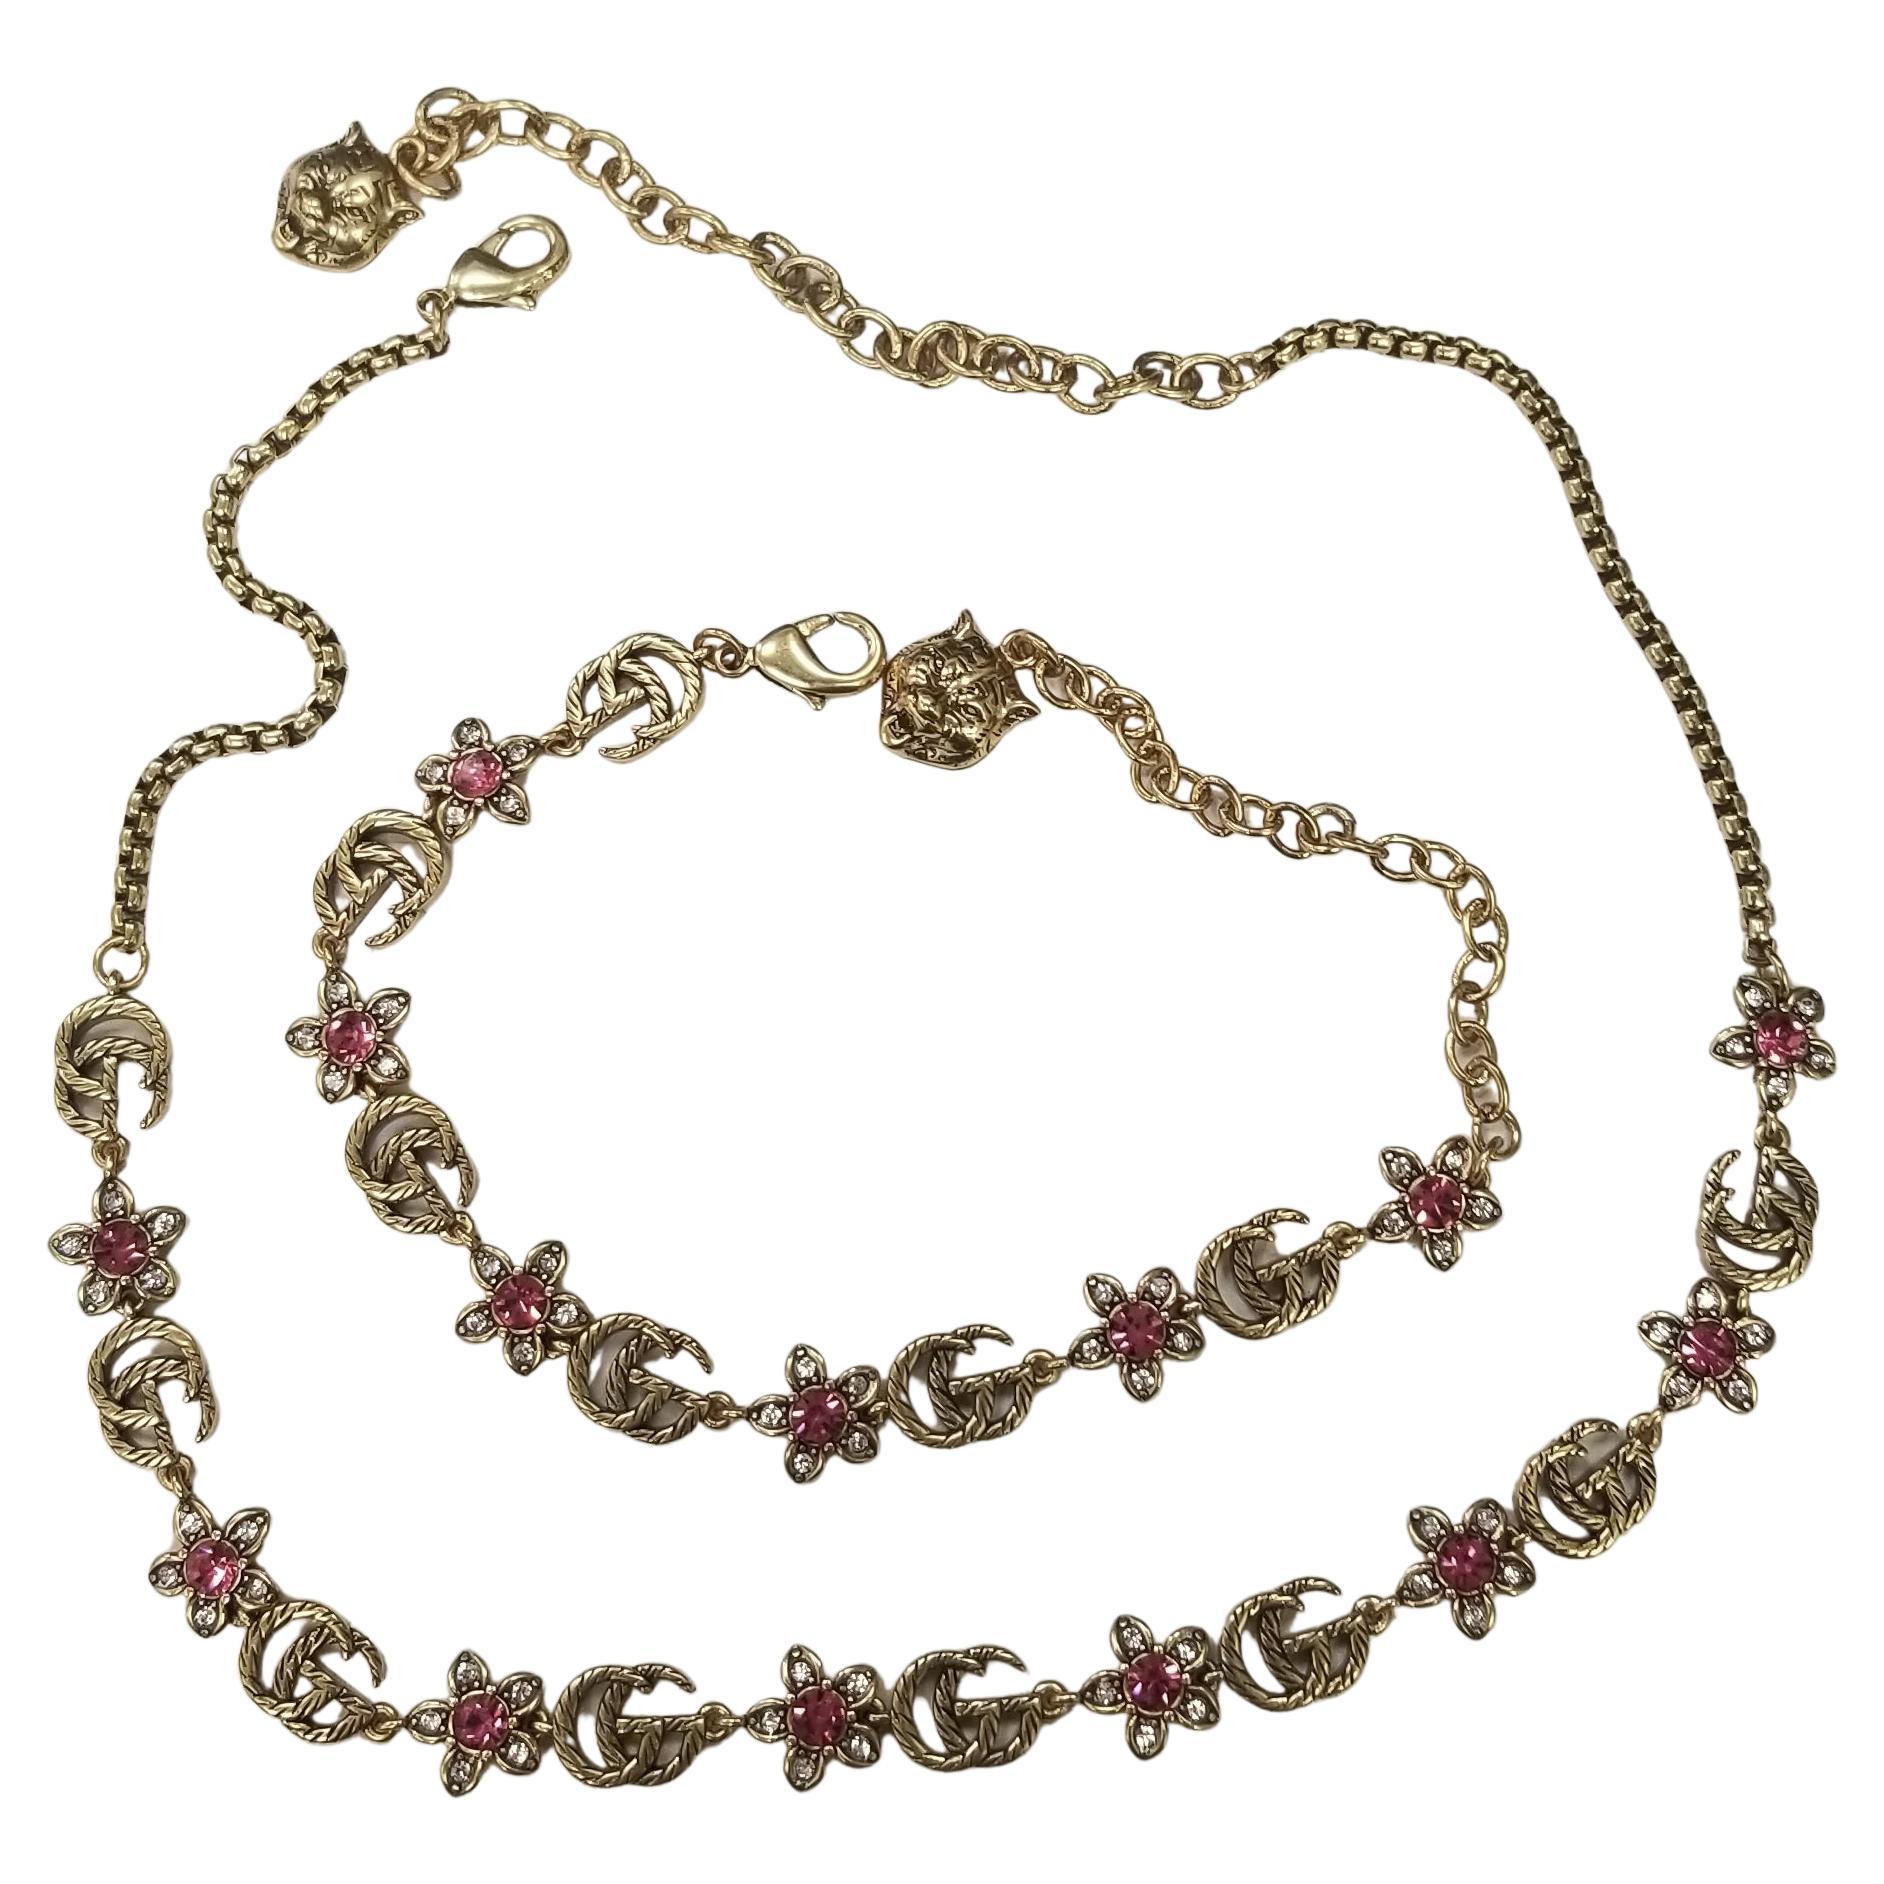 GUCCI GG FLOWER & CRYSTALS adjustable bracelet and necklace set